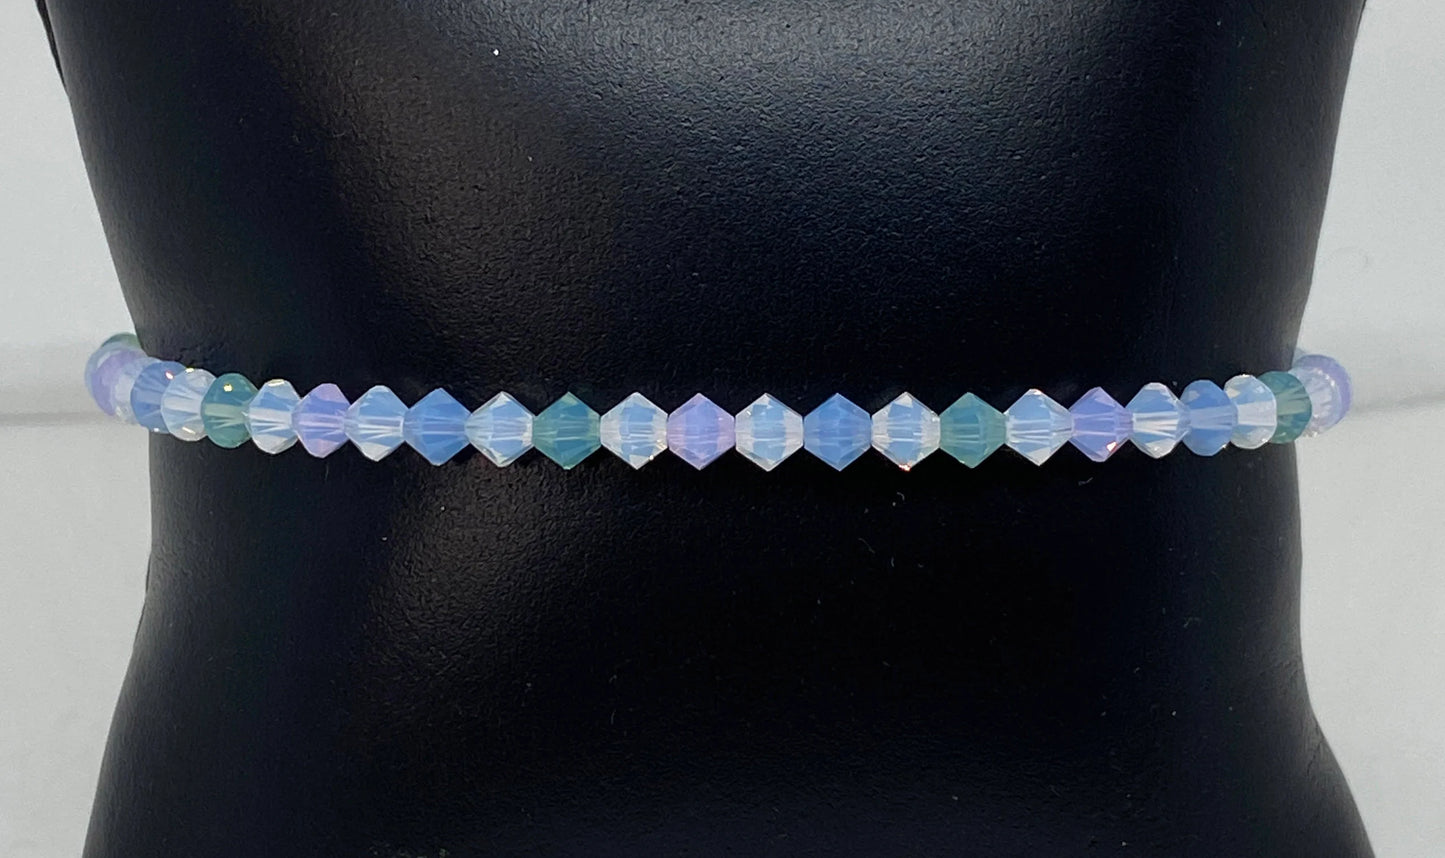 Swarovski Crystal Bracelet in Spring Opal - with Pacific, Violet, and Air Opal Swarovski Crystals